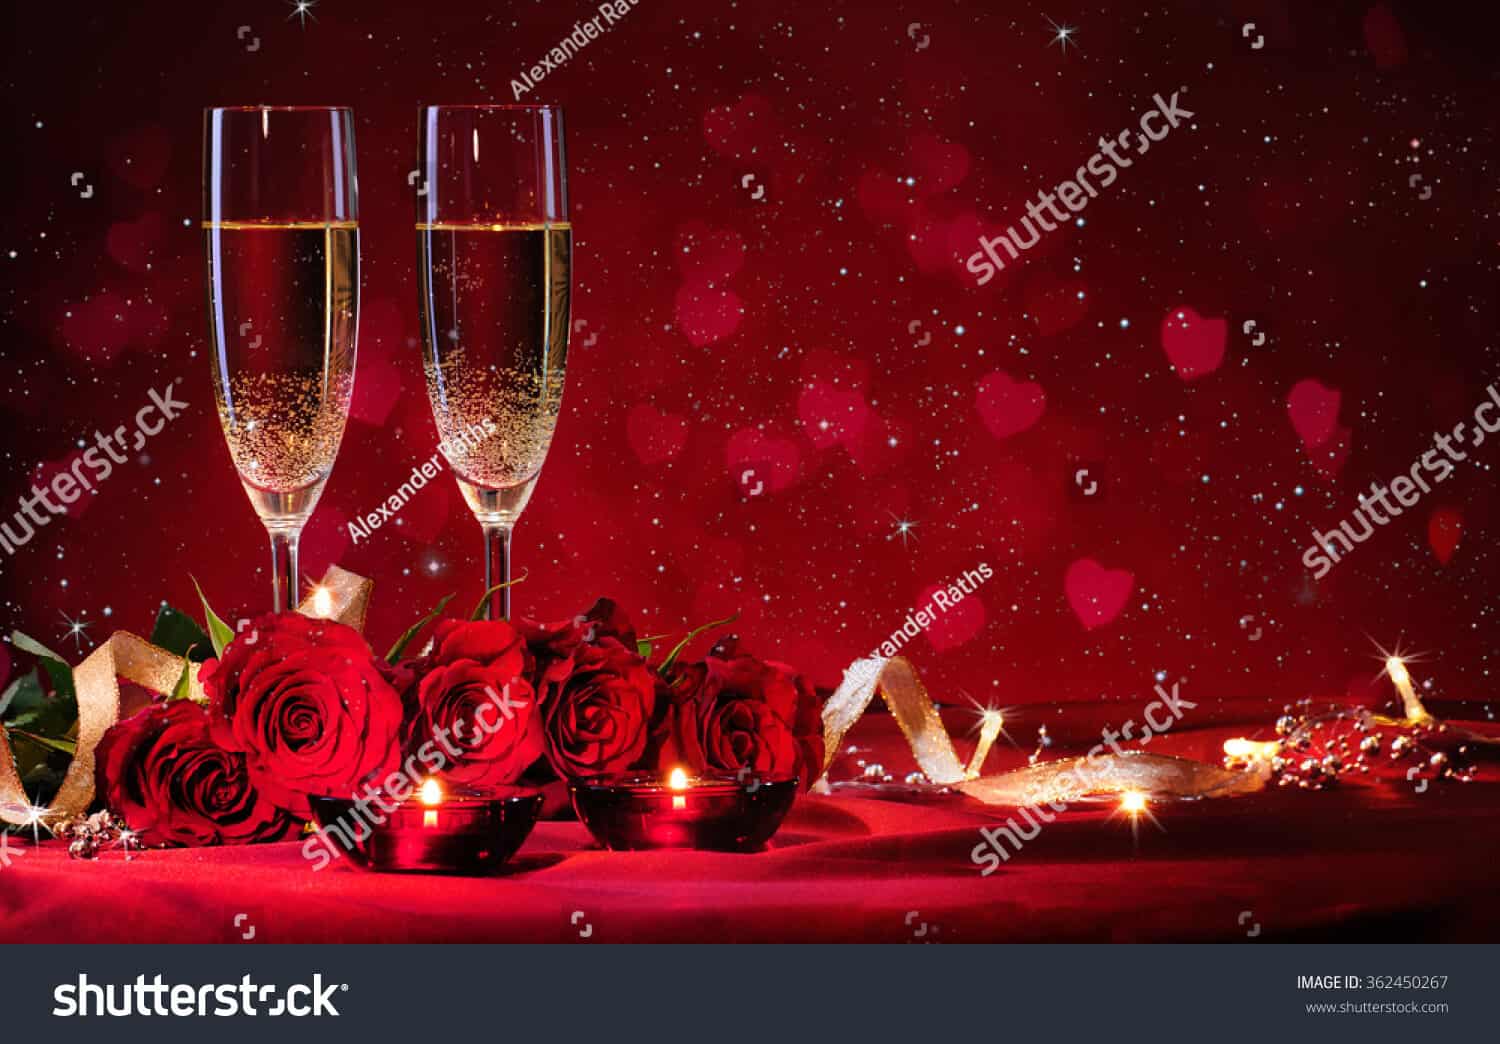 13 ngàn hình ảnh hoa và rượu sâm panh trong ngày lễ Valentine chất lượng cao